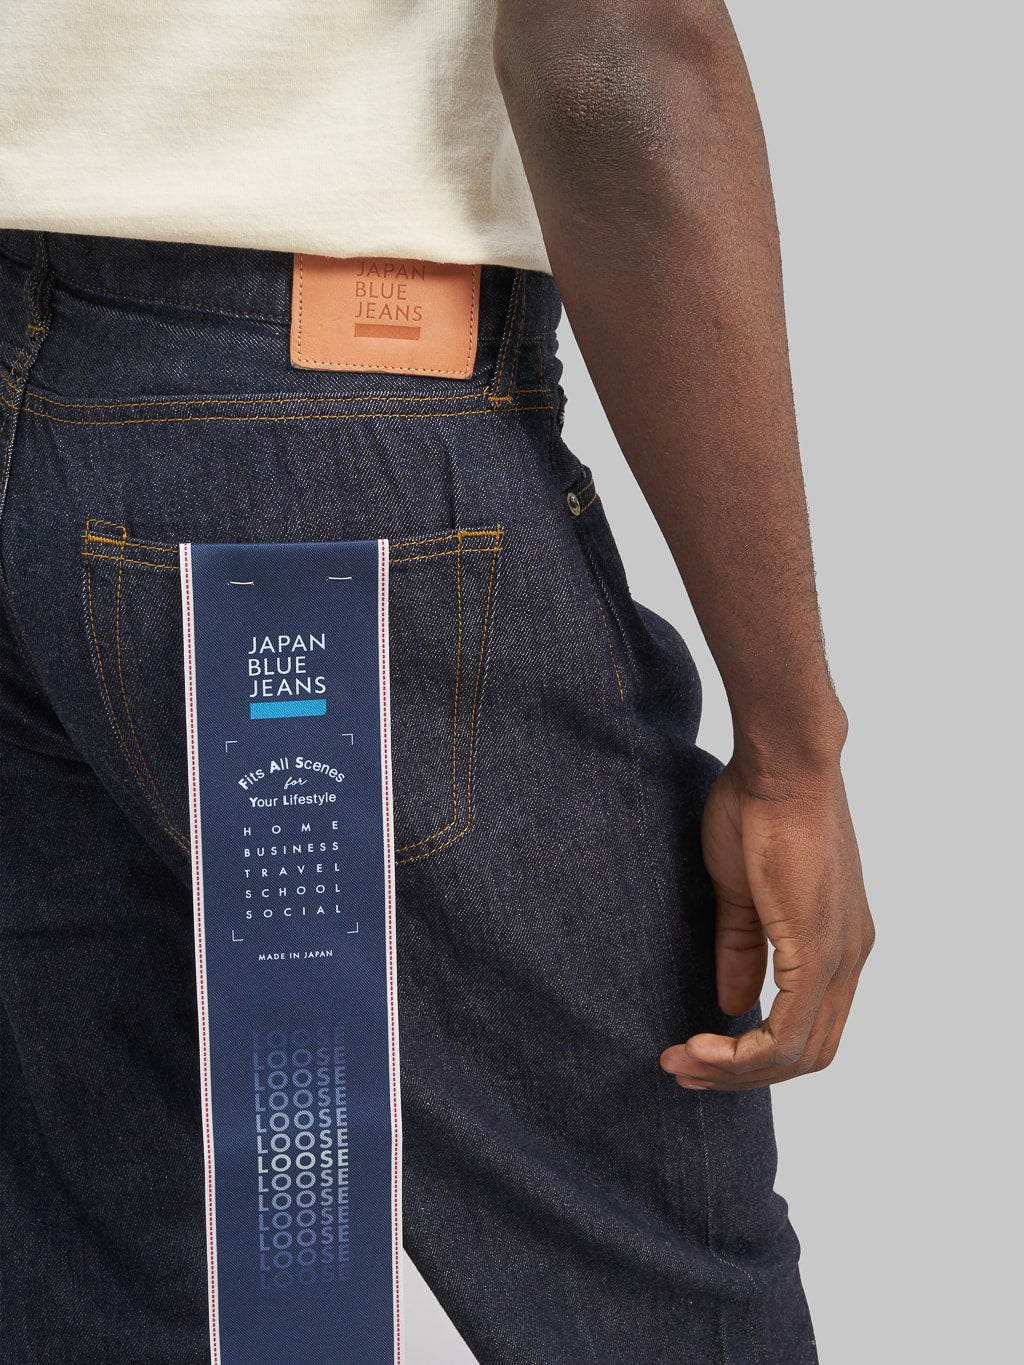 Japan Blue J508 lightweight selvedge denim loose Jeans back pocket